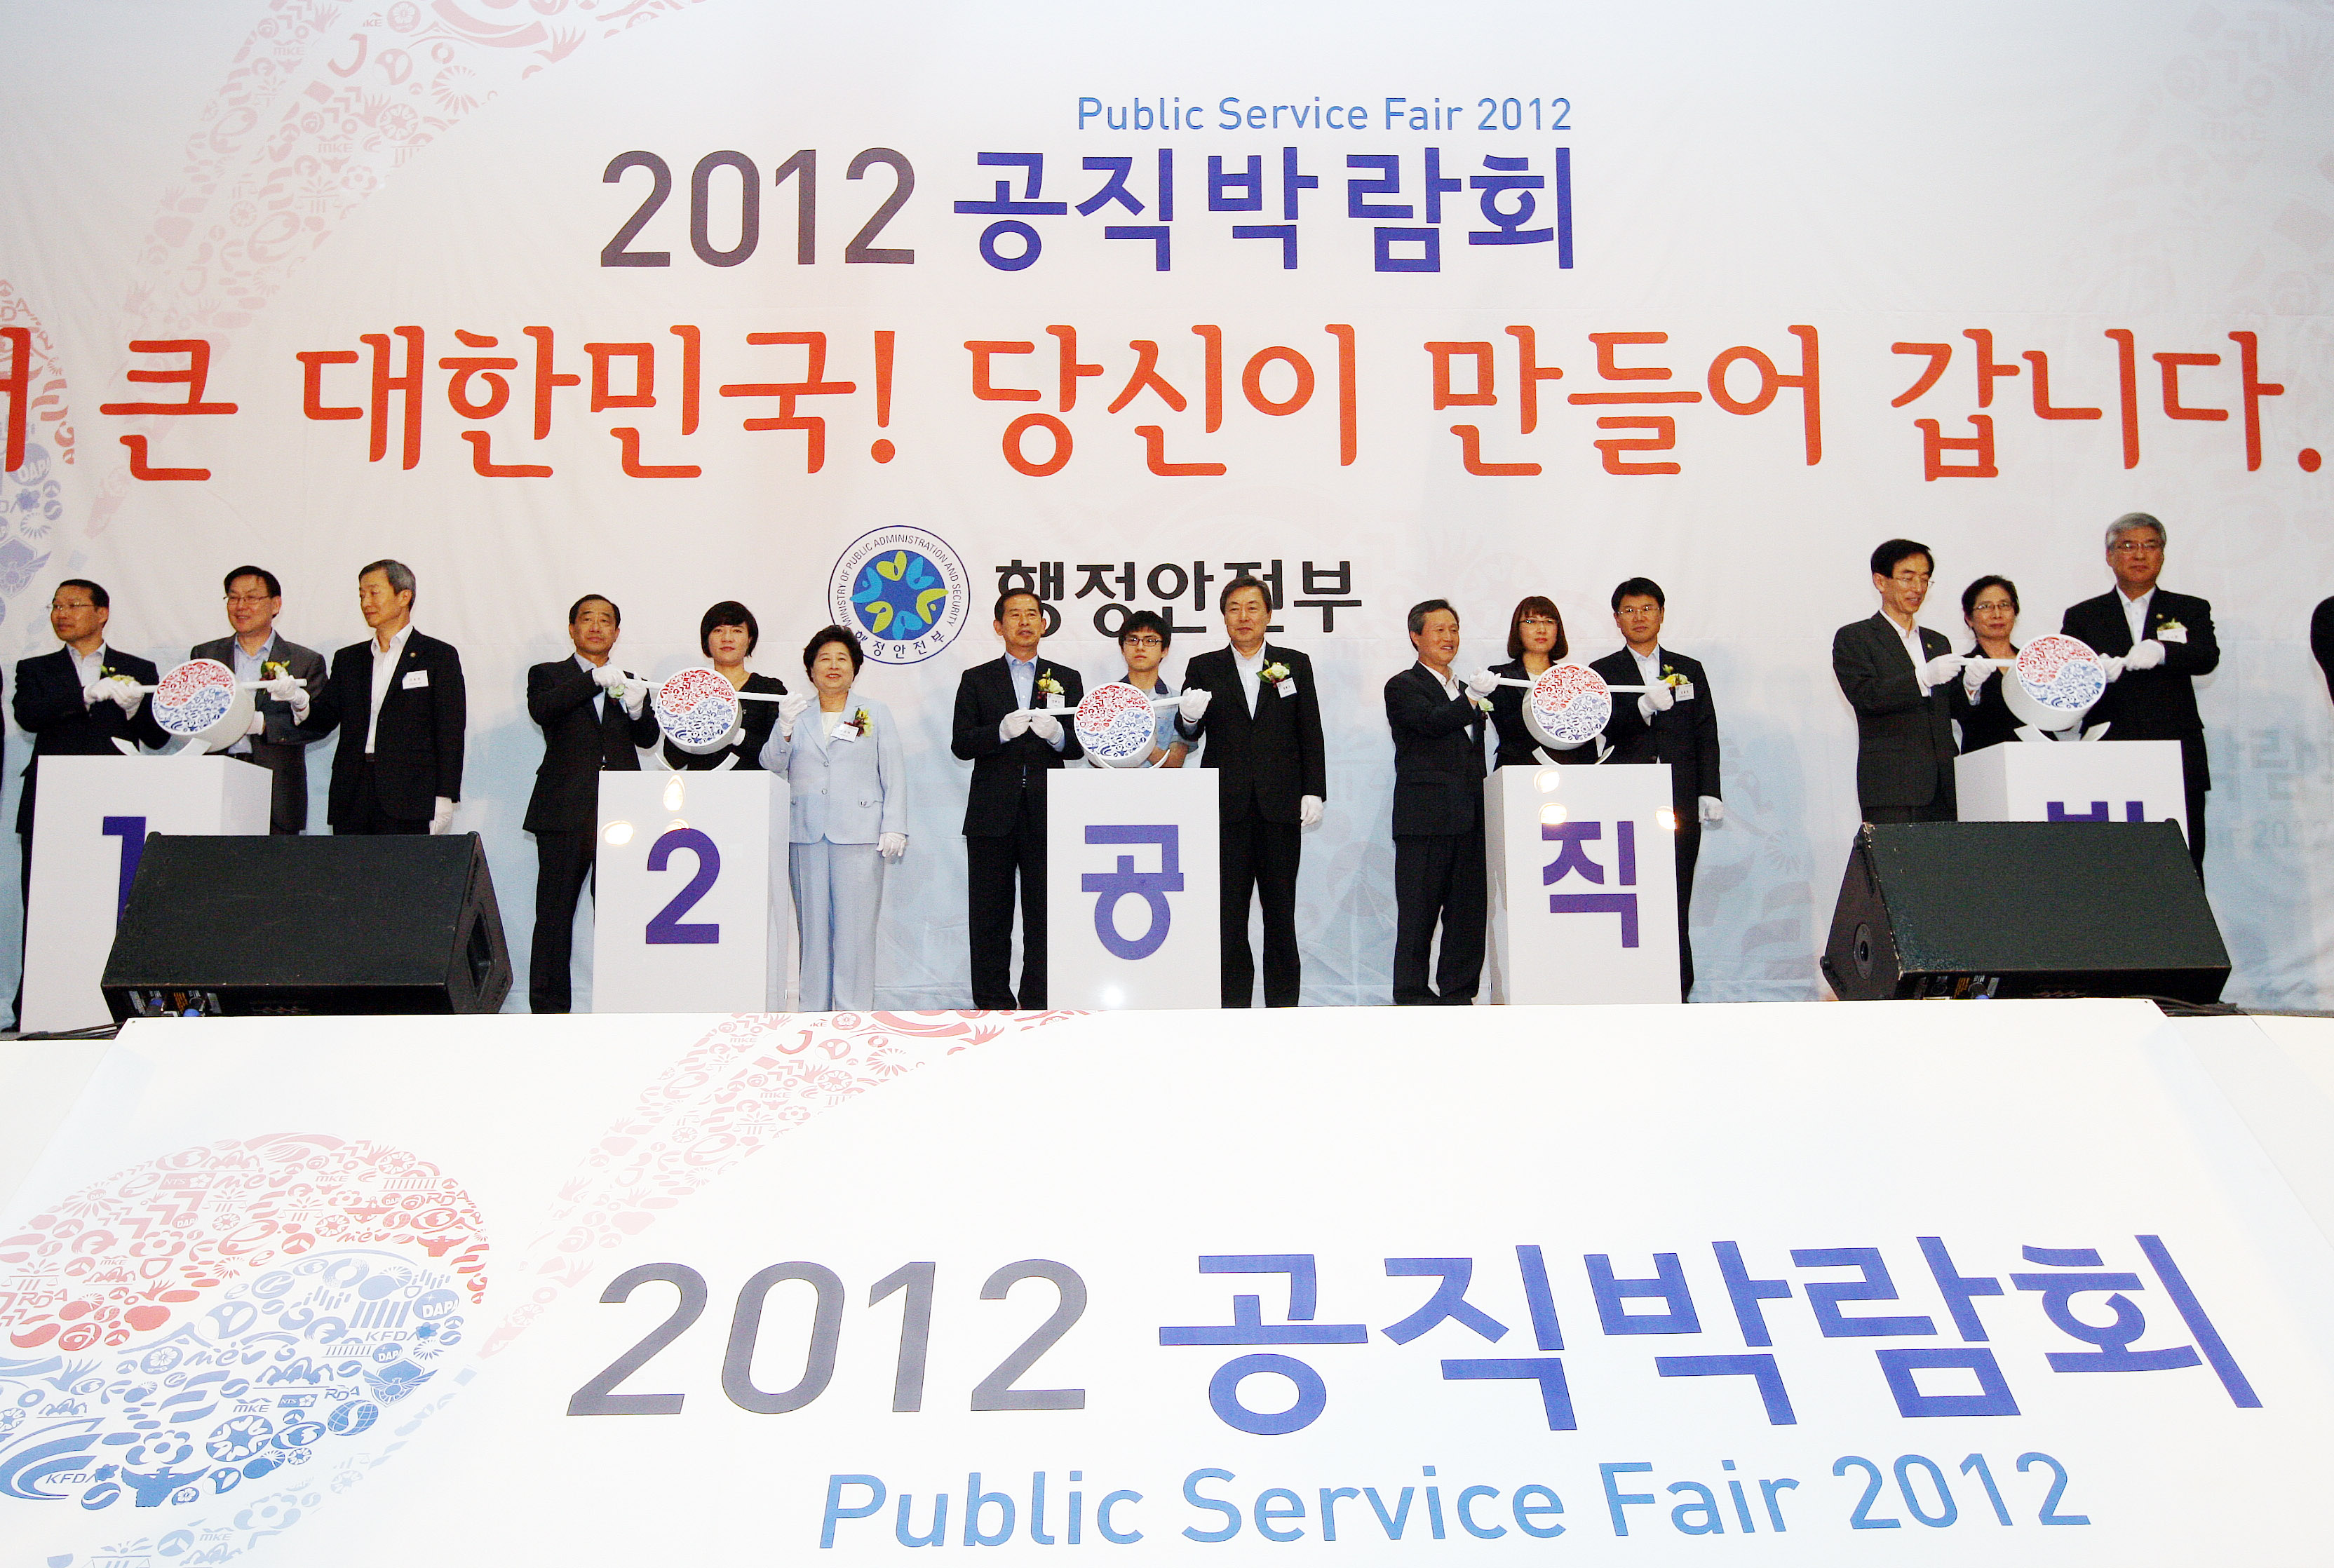 대한민국 공직 정보『2012 공직박람회』개최